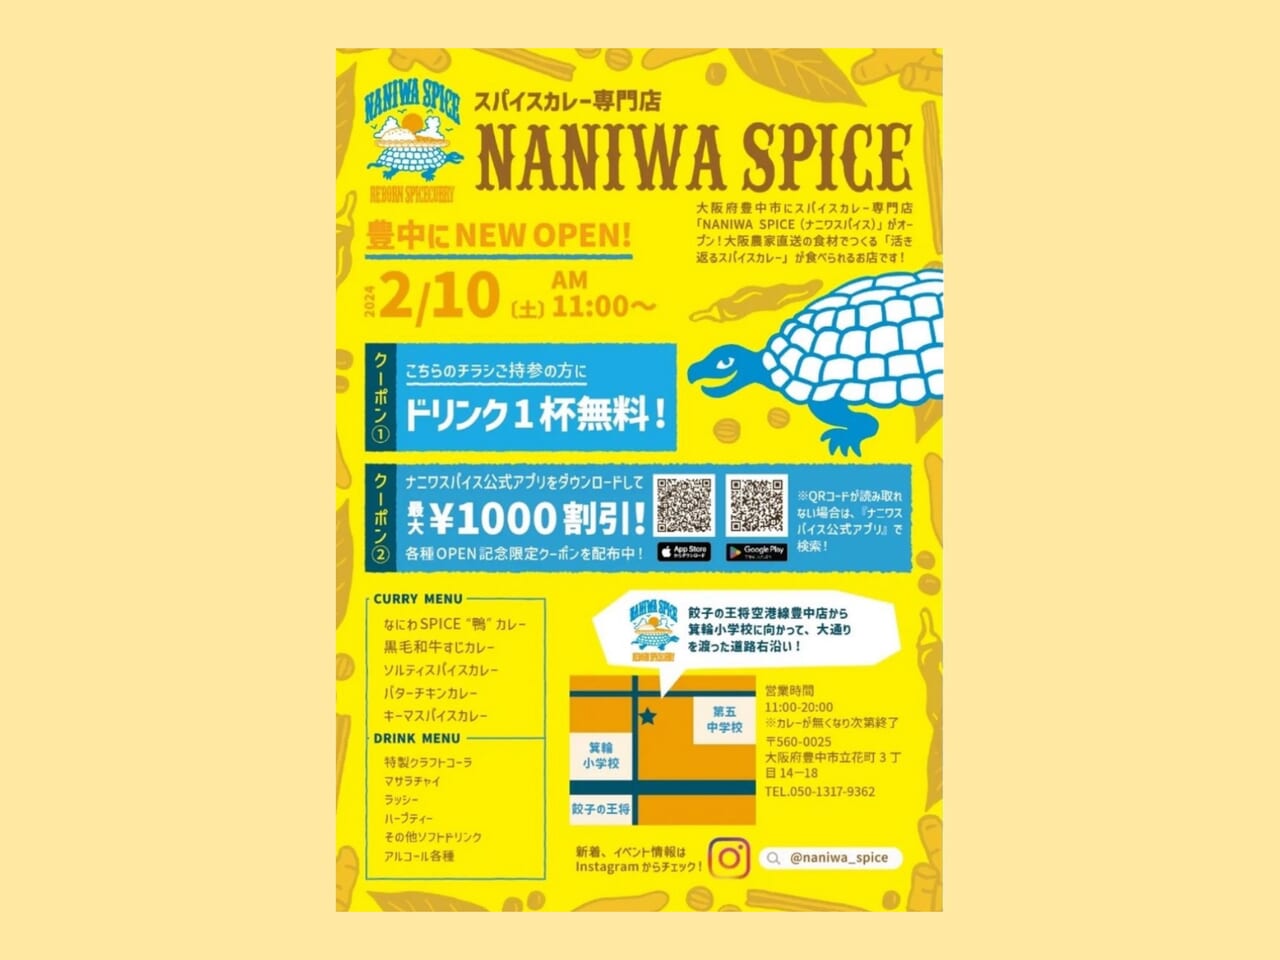 スパイスカレー専門店 NANIWA SPICE